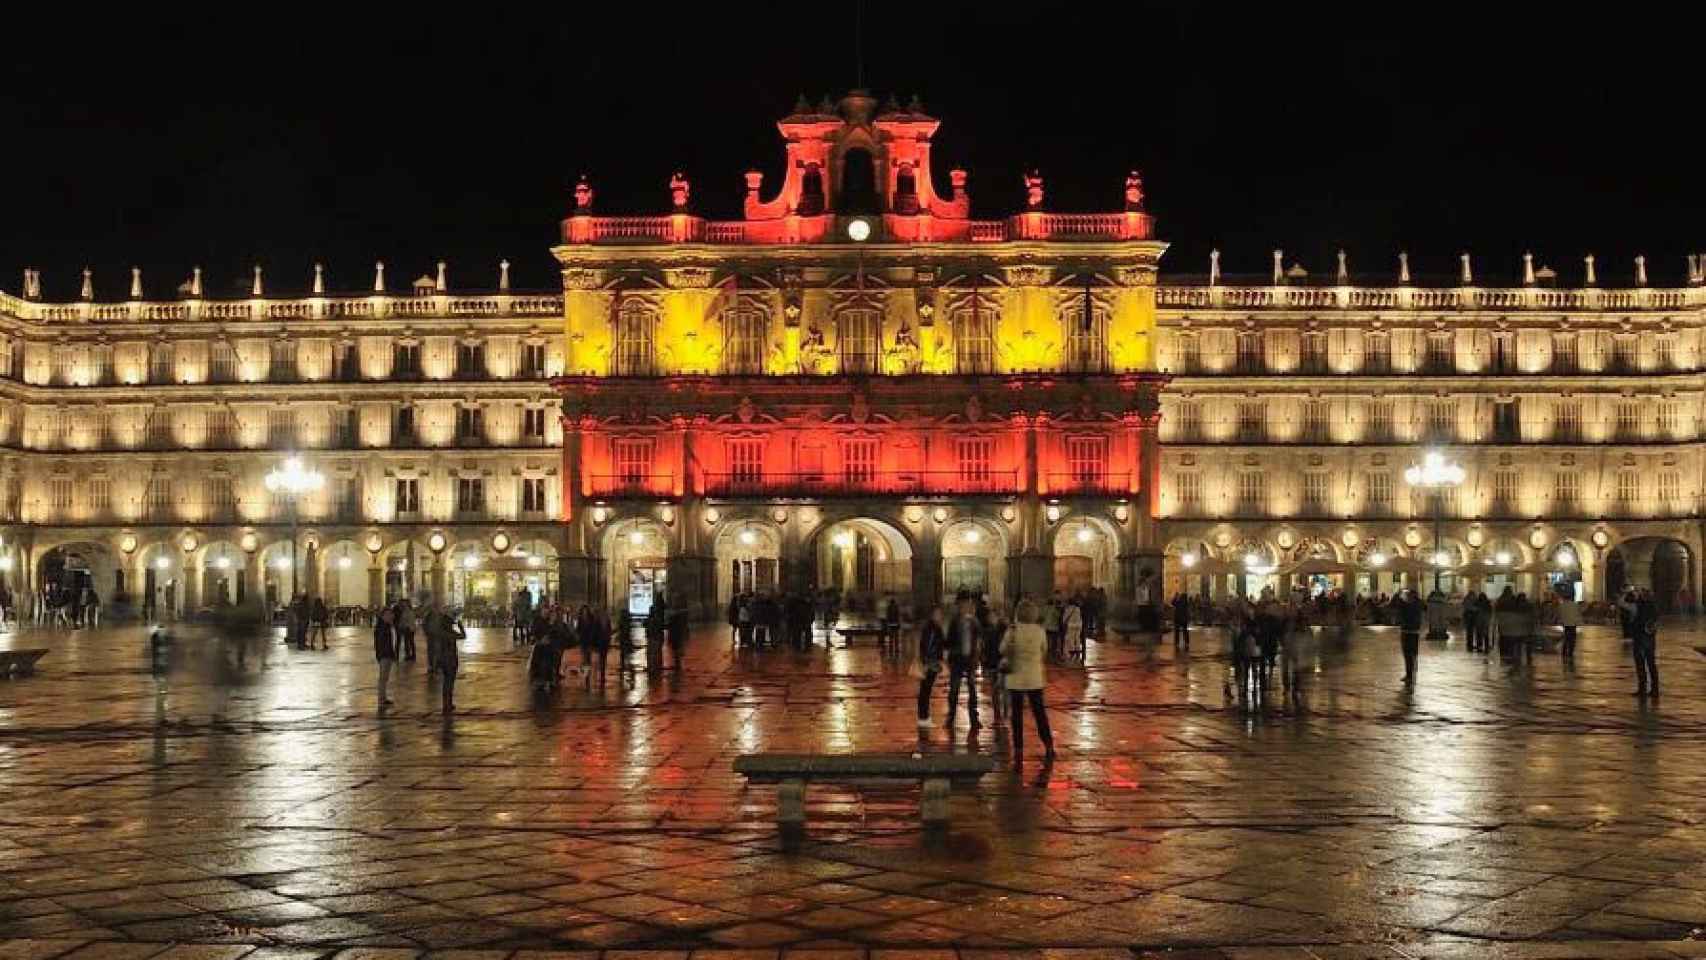 La fachada del Ayuntamiento de Salamanca luciendo la bandera nacional en su fachada